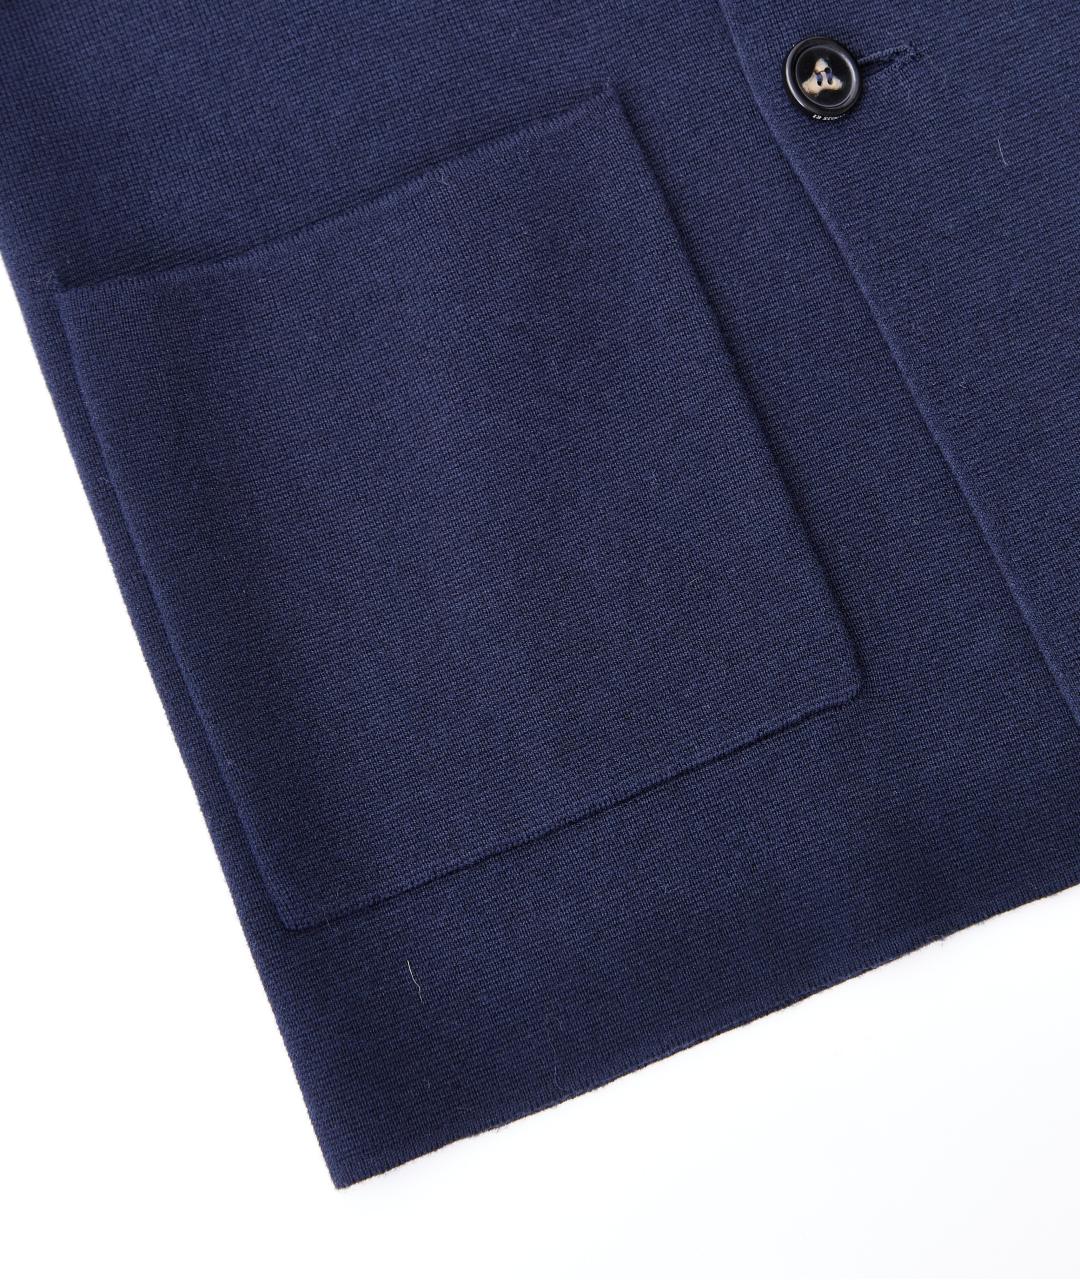 12 STOREEZ Темно-синий шерстяной жакет/пиджак, фото 4